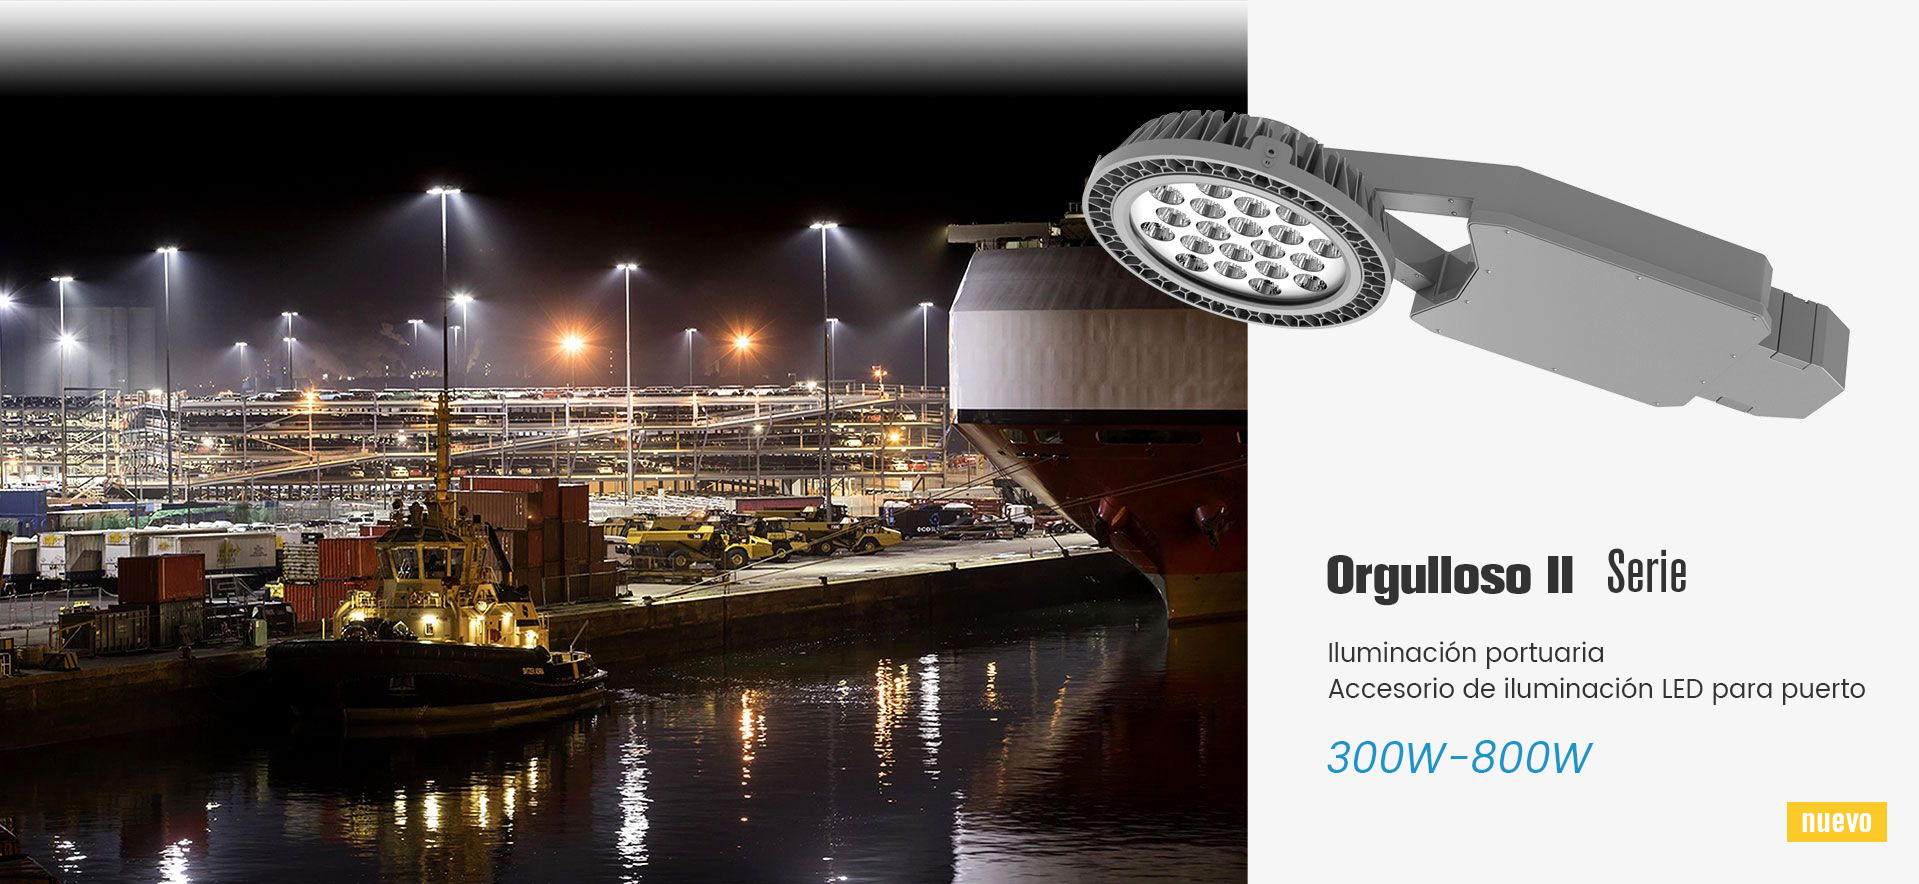 Accesorio de iluminación LED para puerto